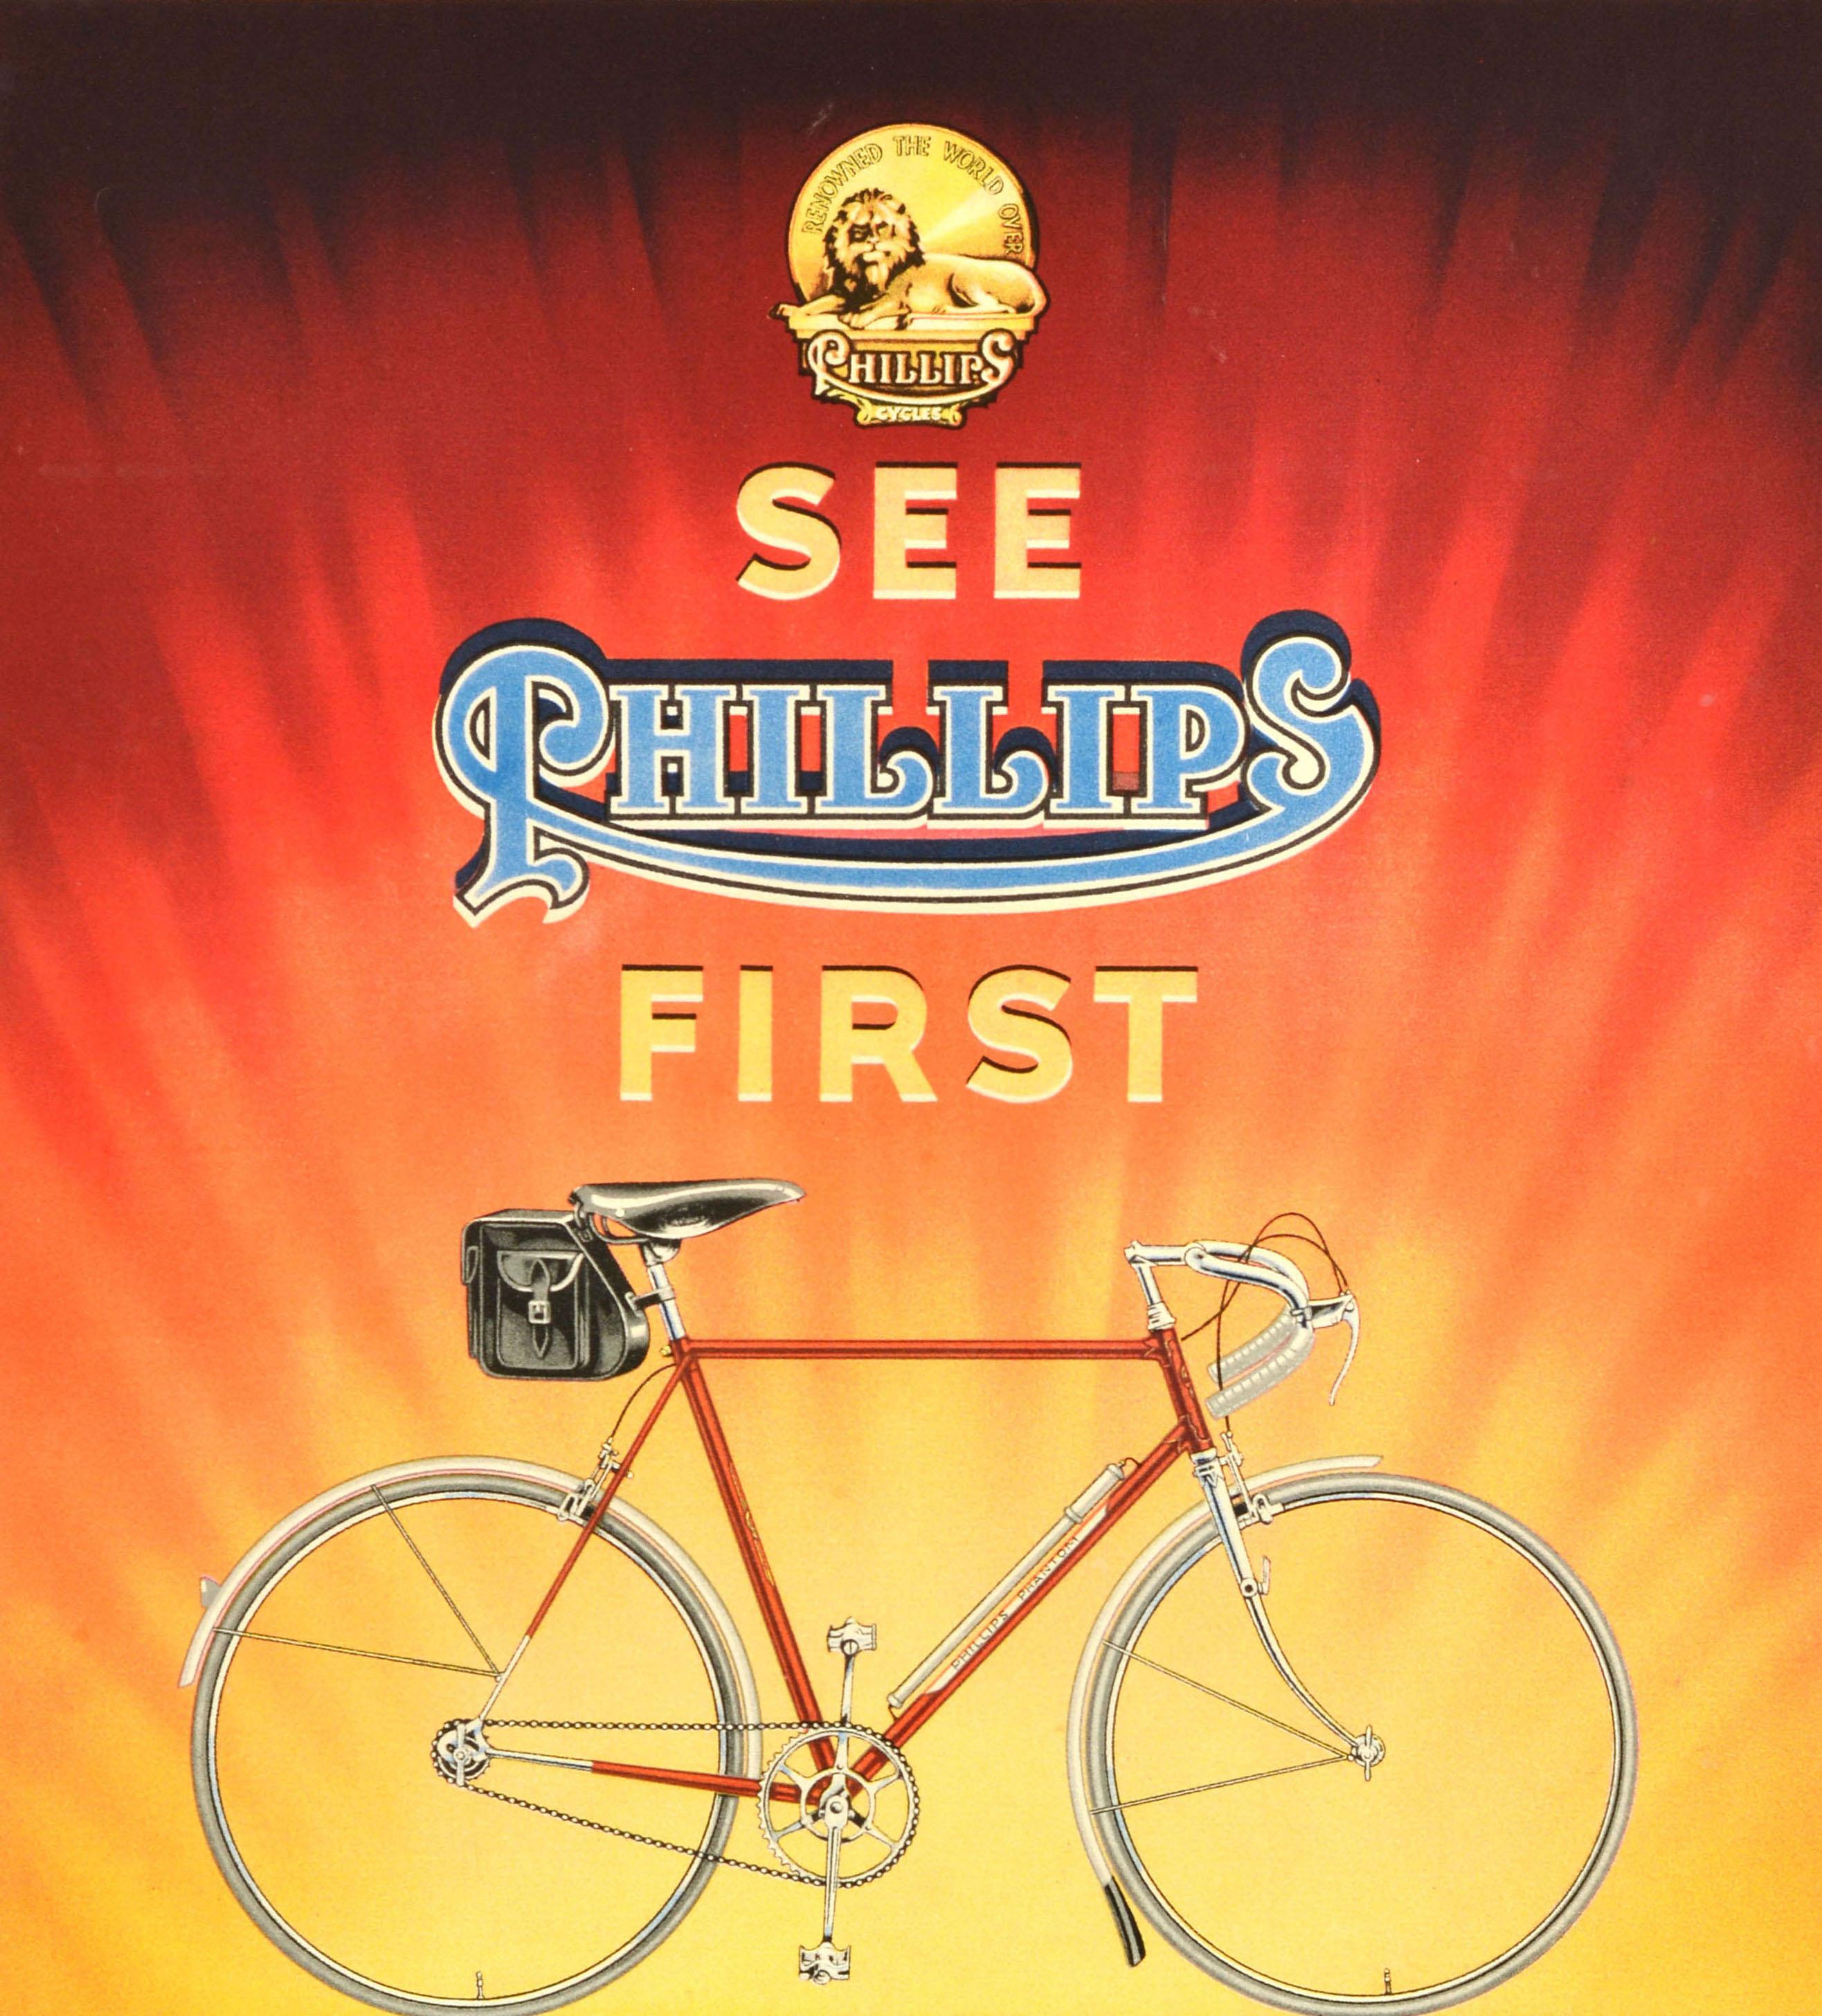 Original Vintage-Fahrrad-Werbeplakat - Siehe Phillips ersten Eine wunderbare Palette von Sport-Maschinen fragen Sie hier für die kostenlose illustrierten Katalog - mit einem Bild von einem neuen Sport-Bike beleuchtet von der Sonne leuchtet in gelb,